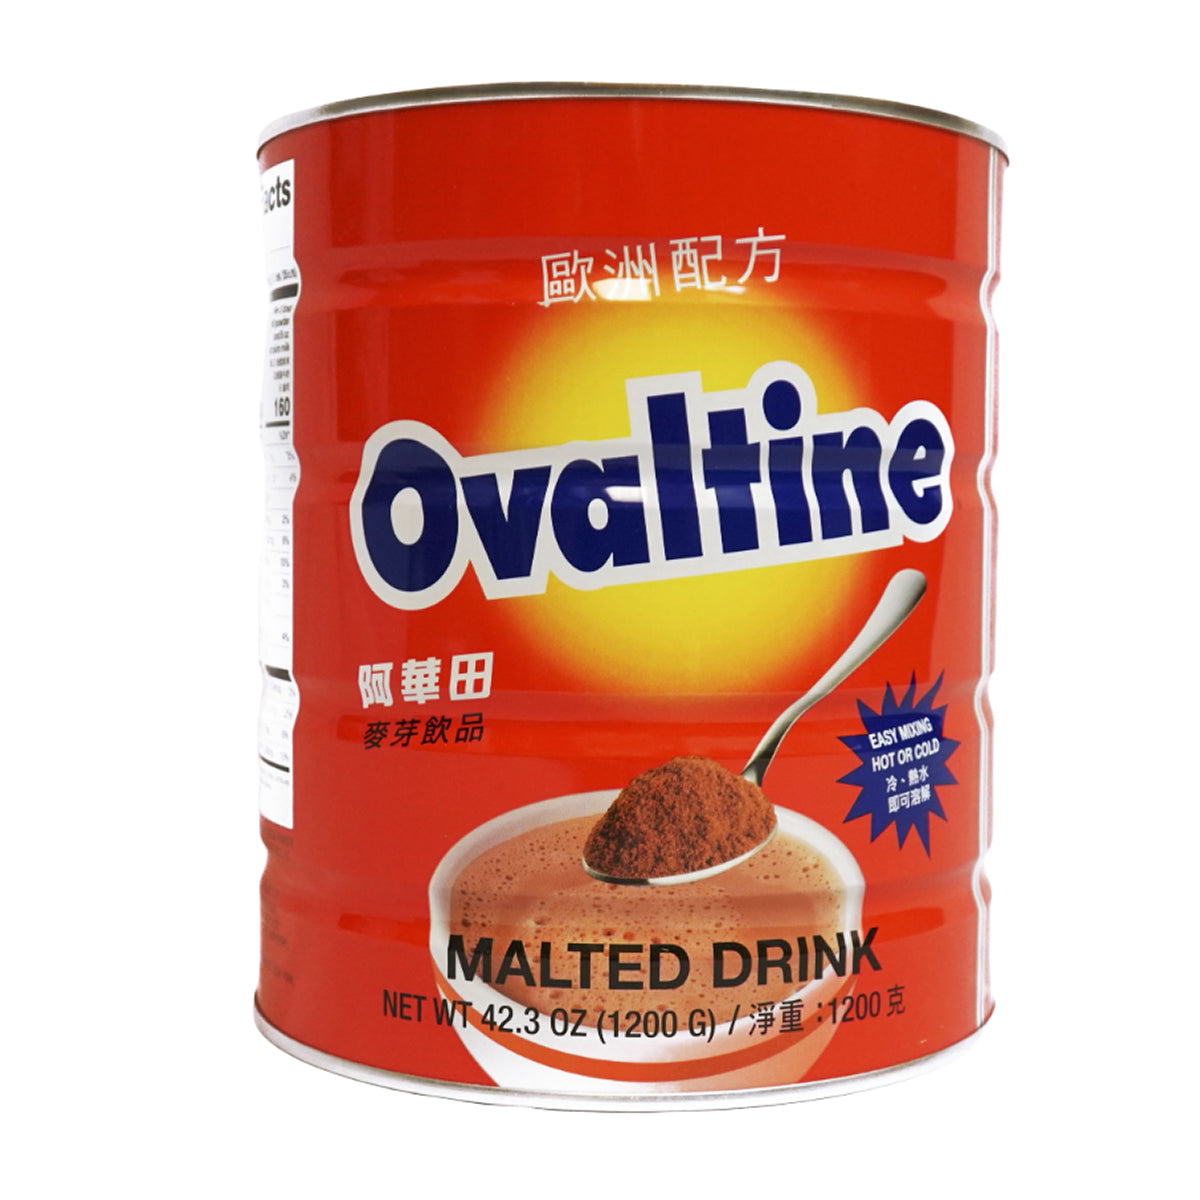 ovaltine malted drink - 1200g